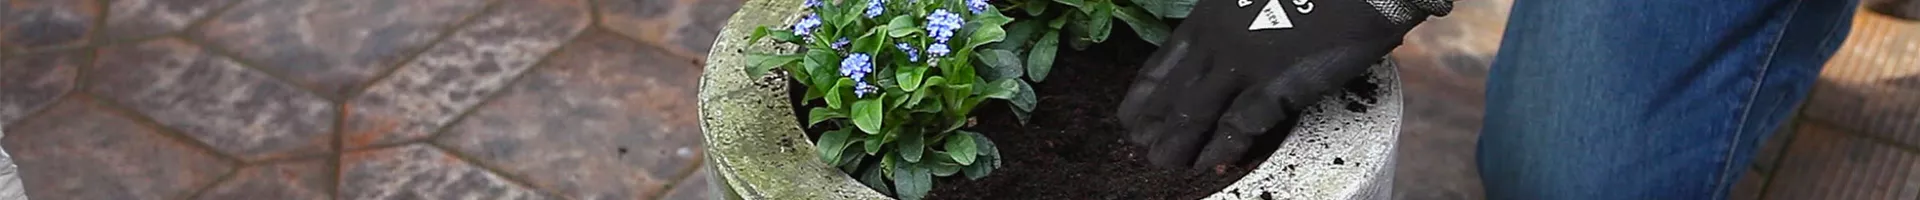 Vergissmeinnicht - Einpflanzen in ein Gefäß (thumbnail).jpg